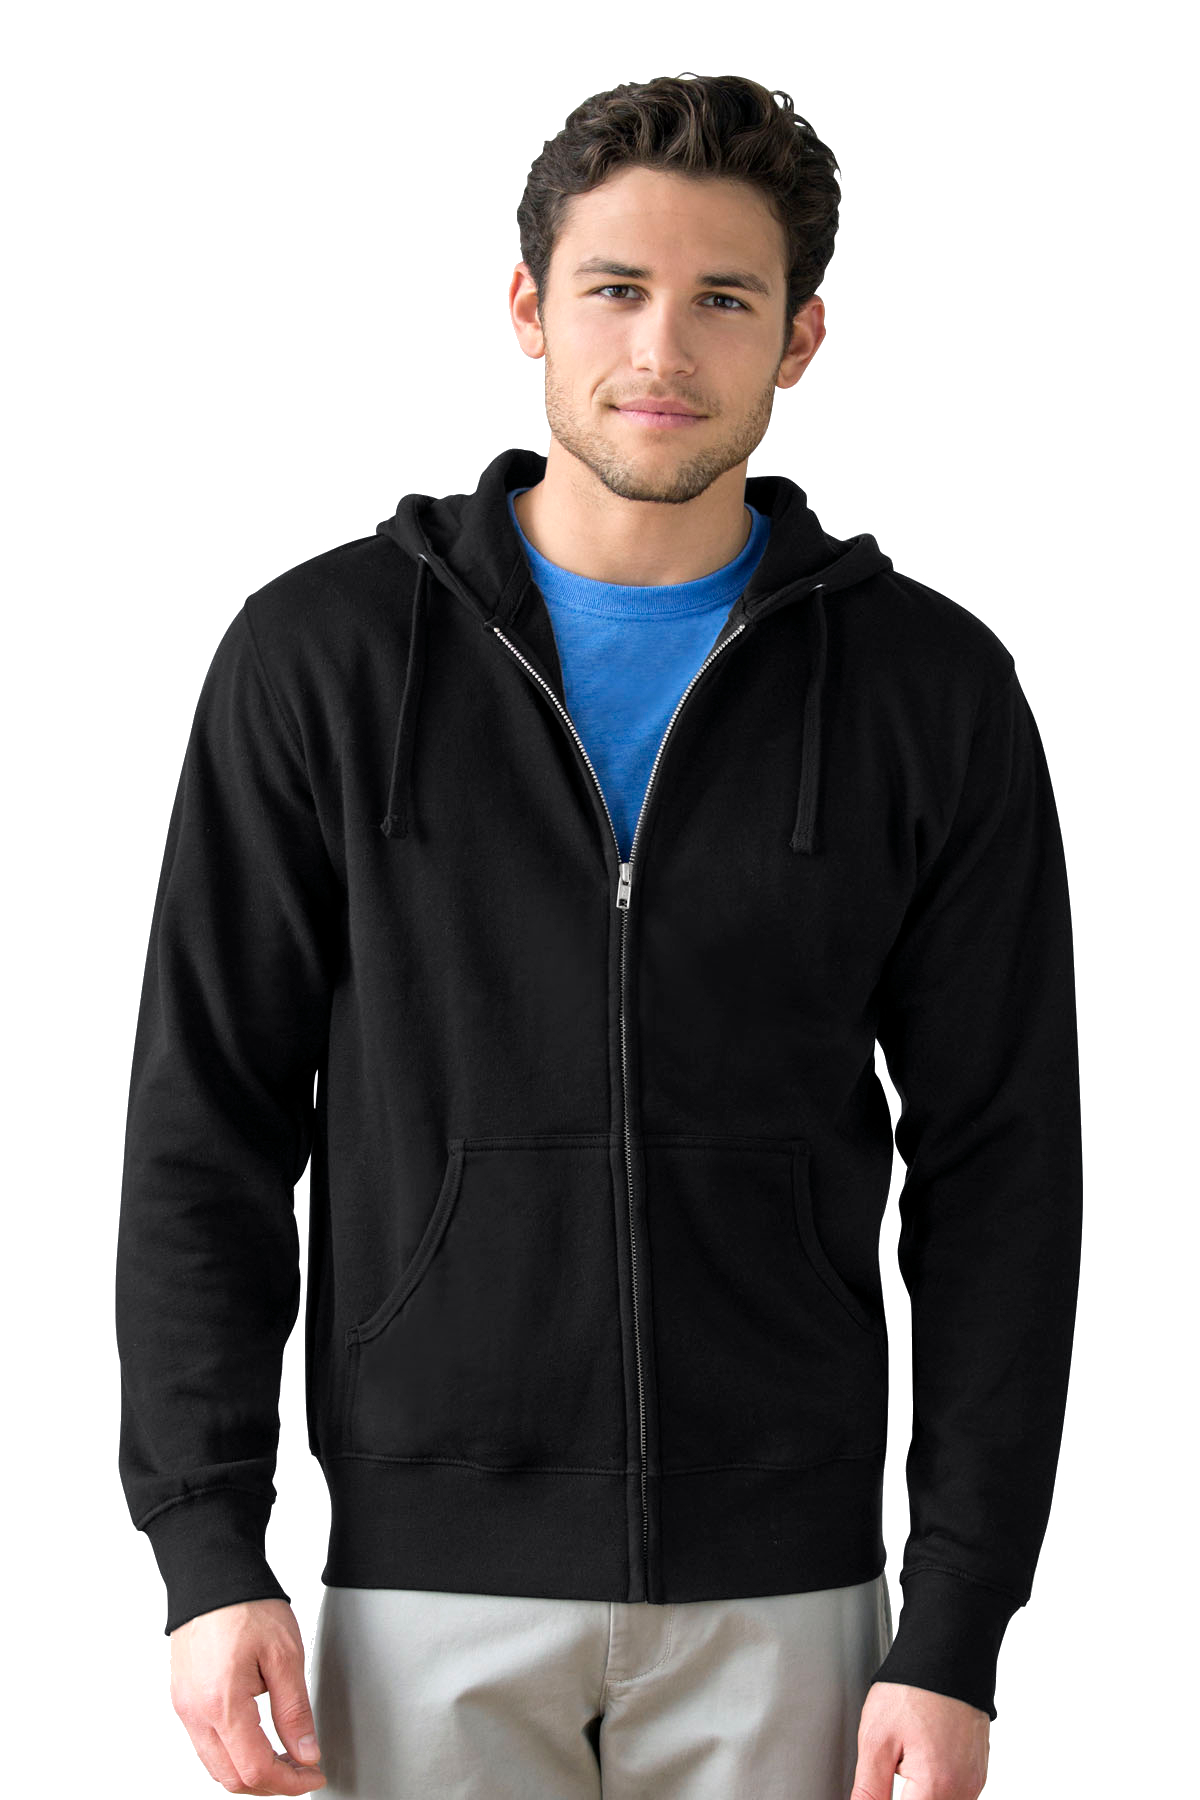 Vantage 3289 - Premium Cotton Fleece Full-Zip Hoodie $23.60 - Sweatshirts